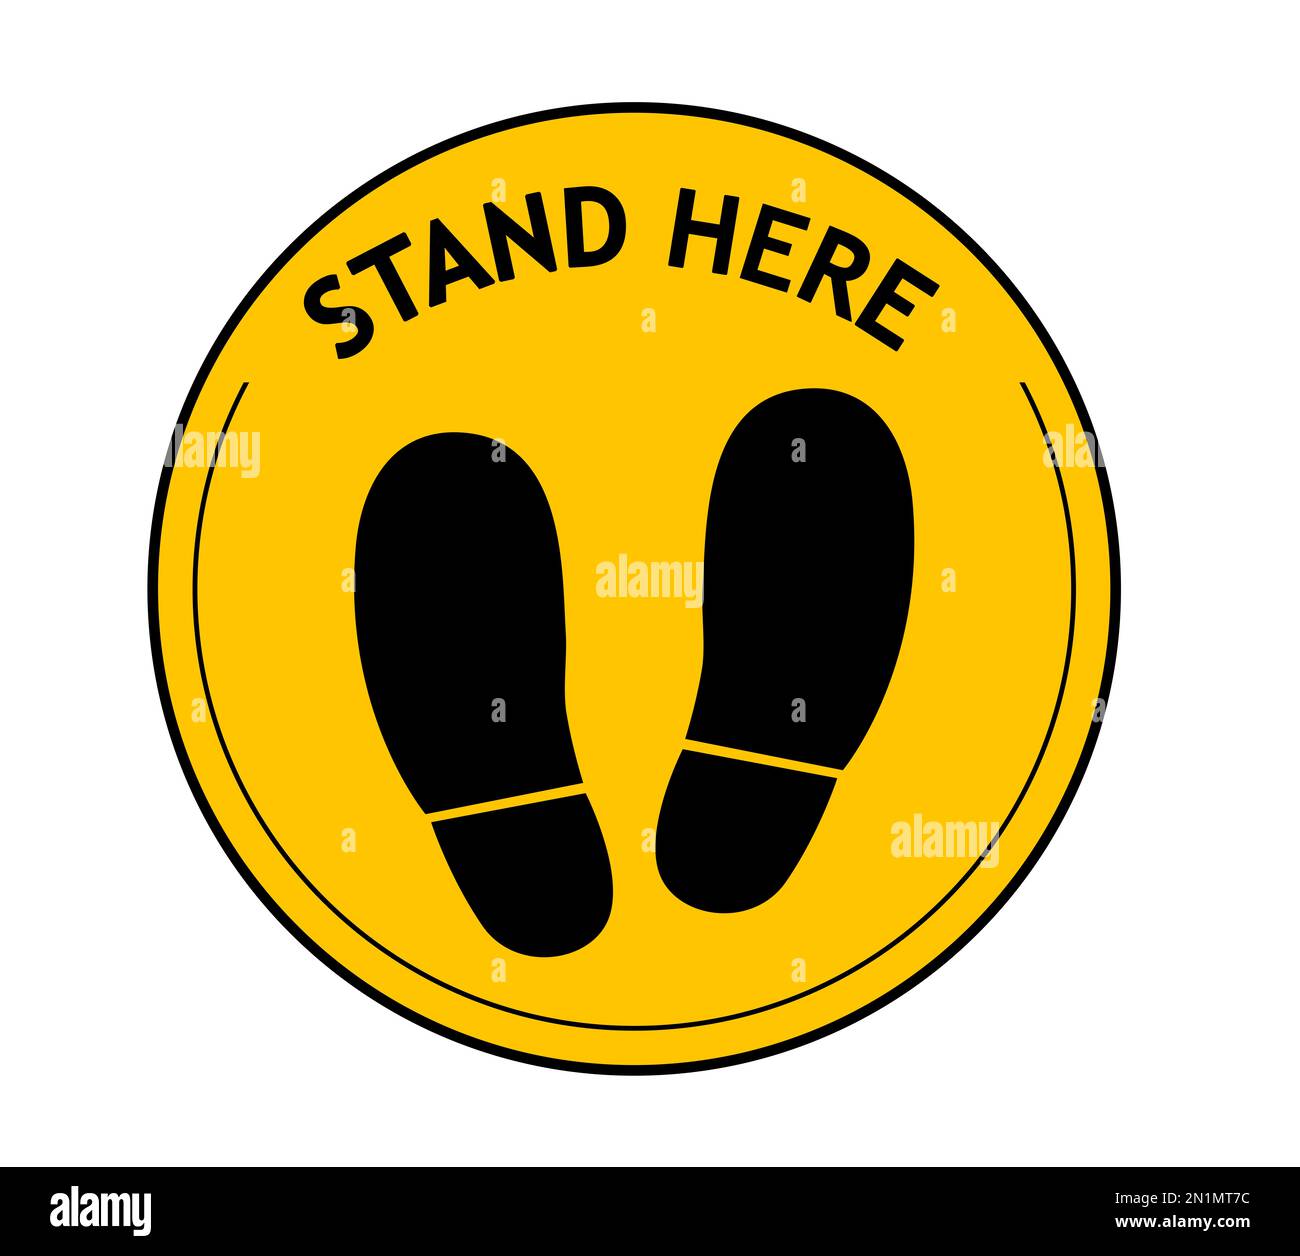 Affiche ronde jaune avec texte Stand Here et empreintes de chaussures, illustration. Distance sociale - mesure de protection pendant une pandémie de coronavirus Banque D'Images